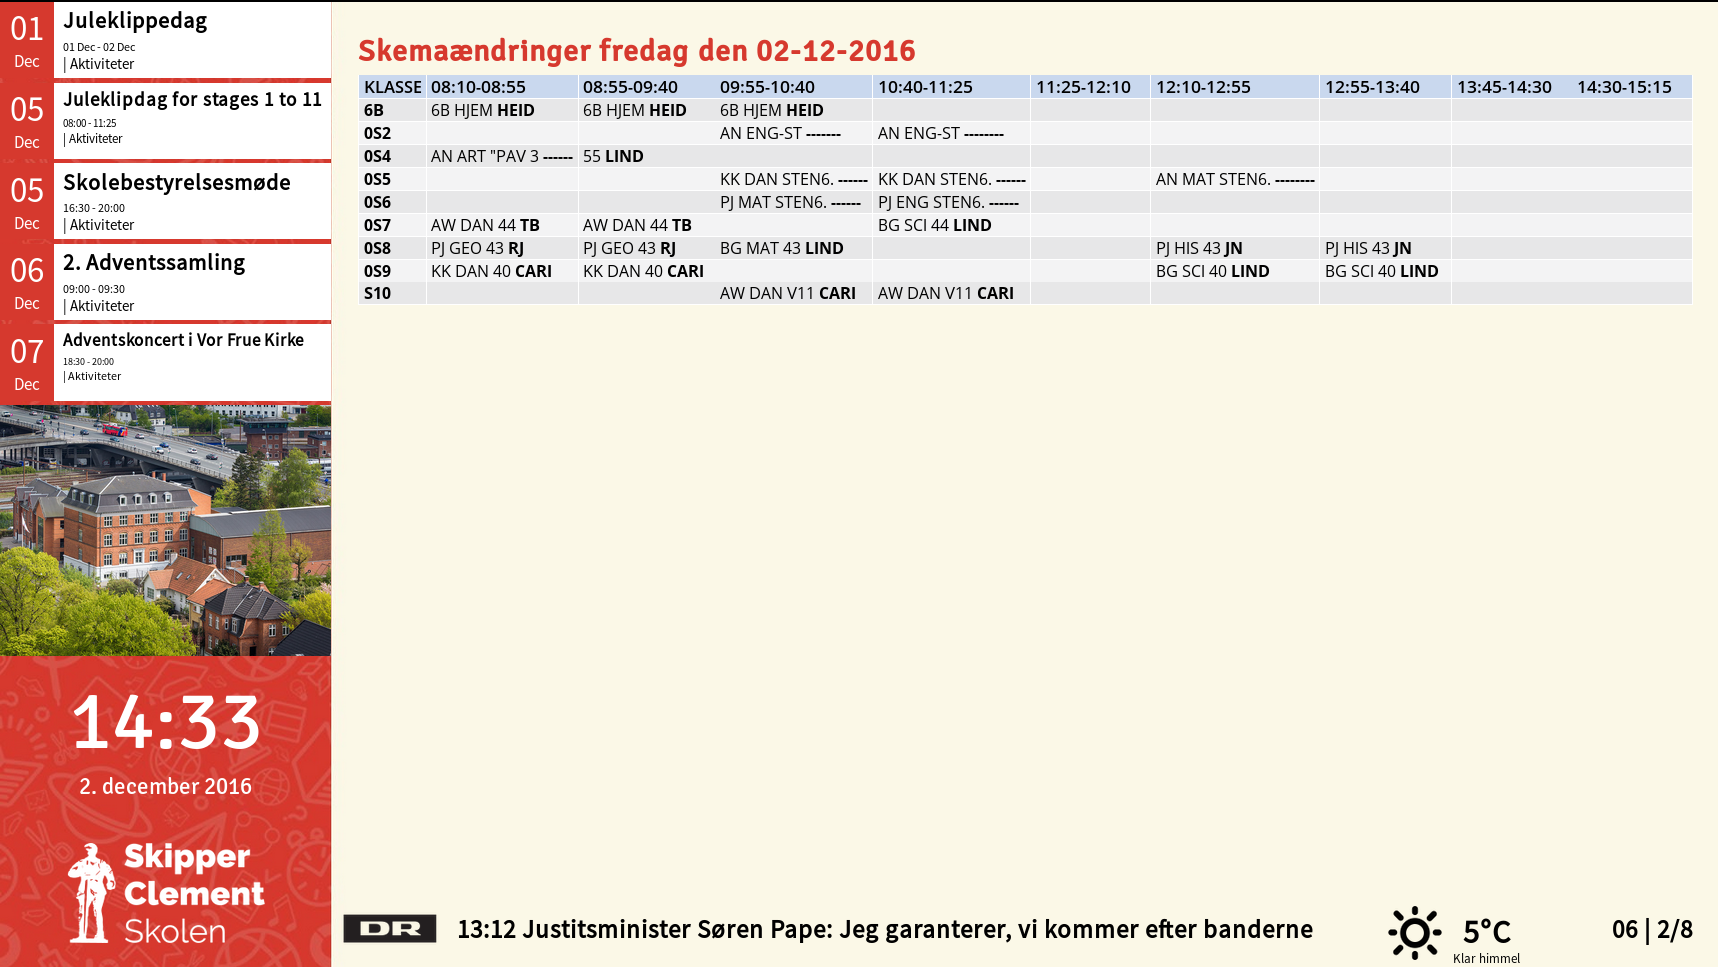 Eksempel på Screenpublisher opsætning med integration til SkoleIntra og udtræk af skemaændringer og kalender